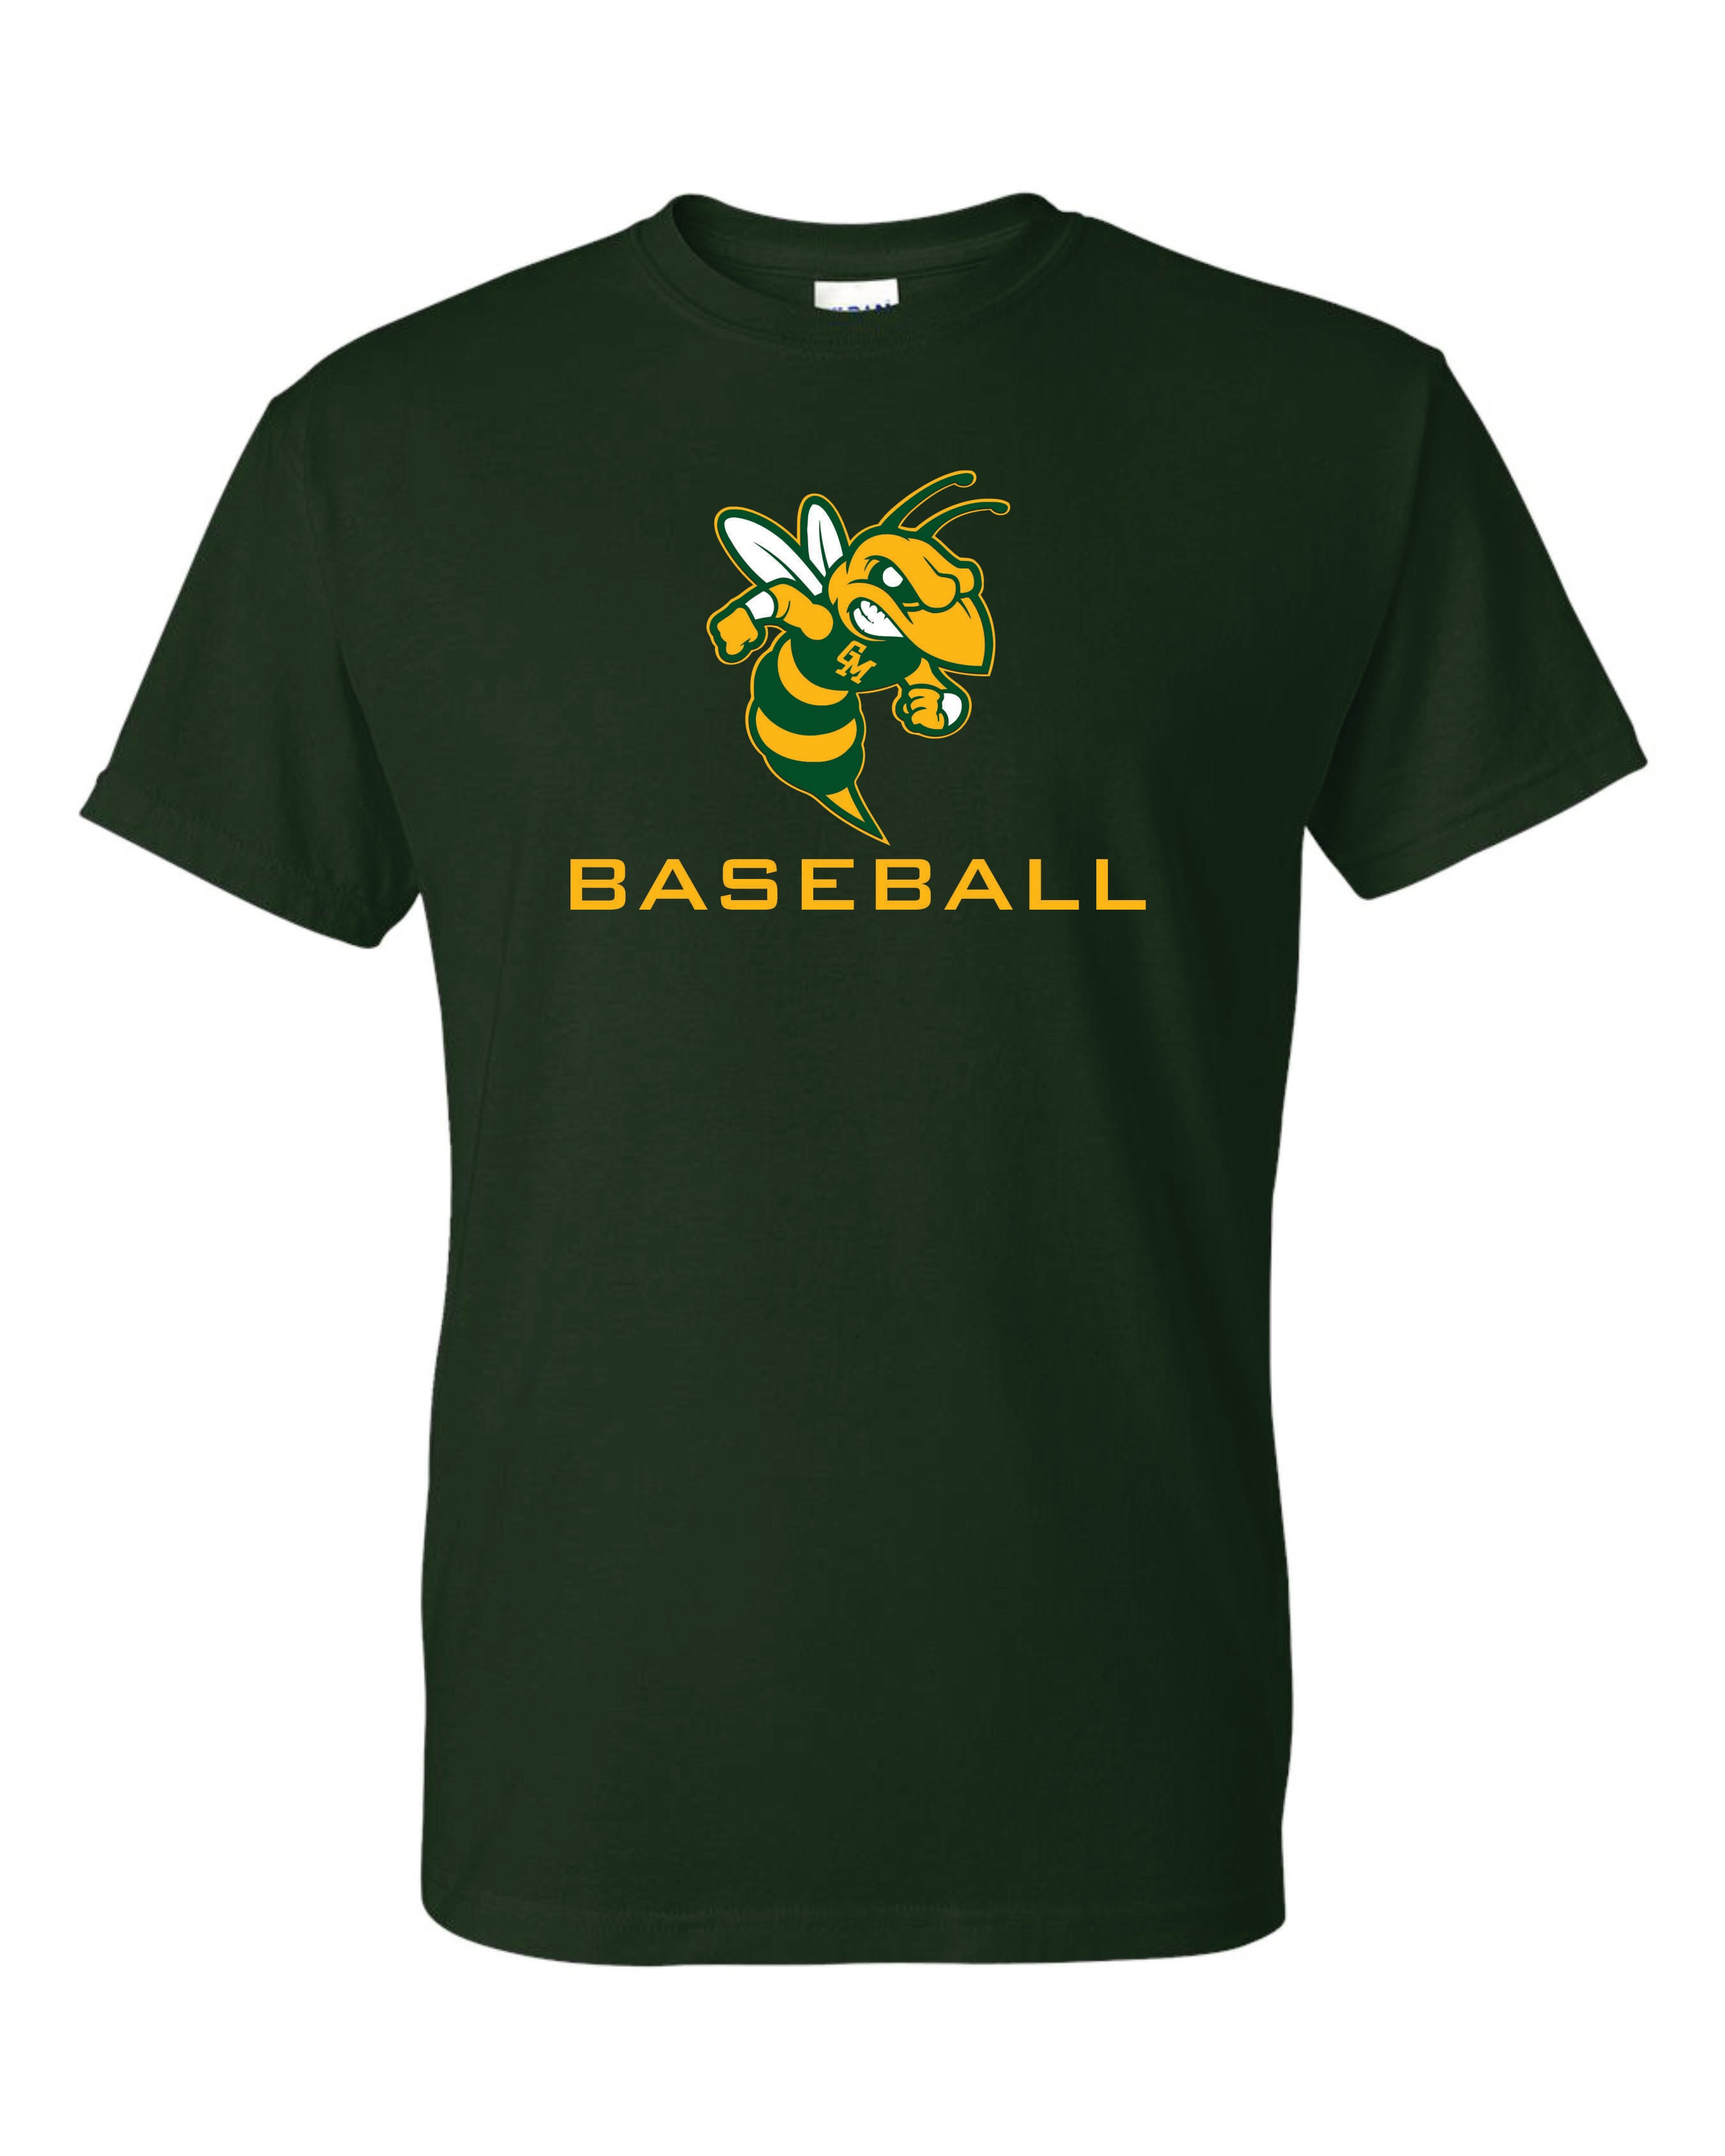 Great Mills Baseball Short Sleeve T-Shirt 50/50 Blend